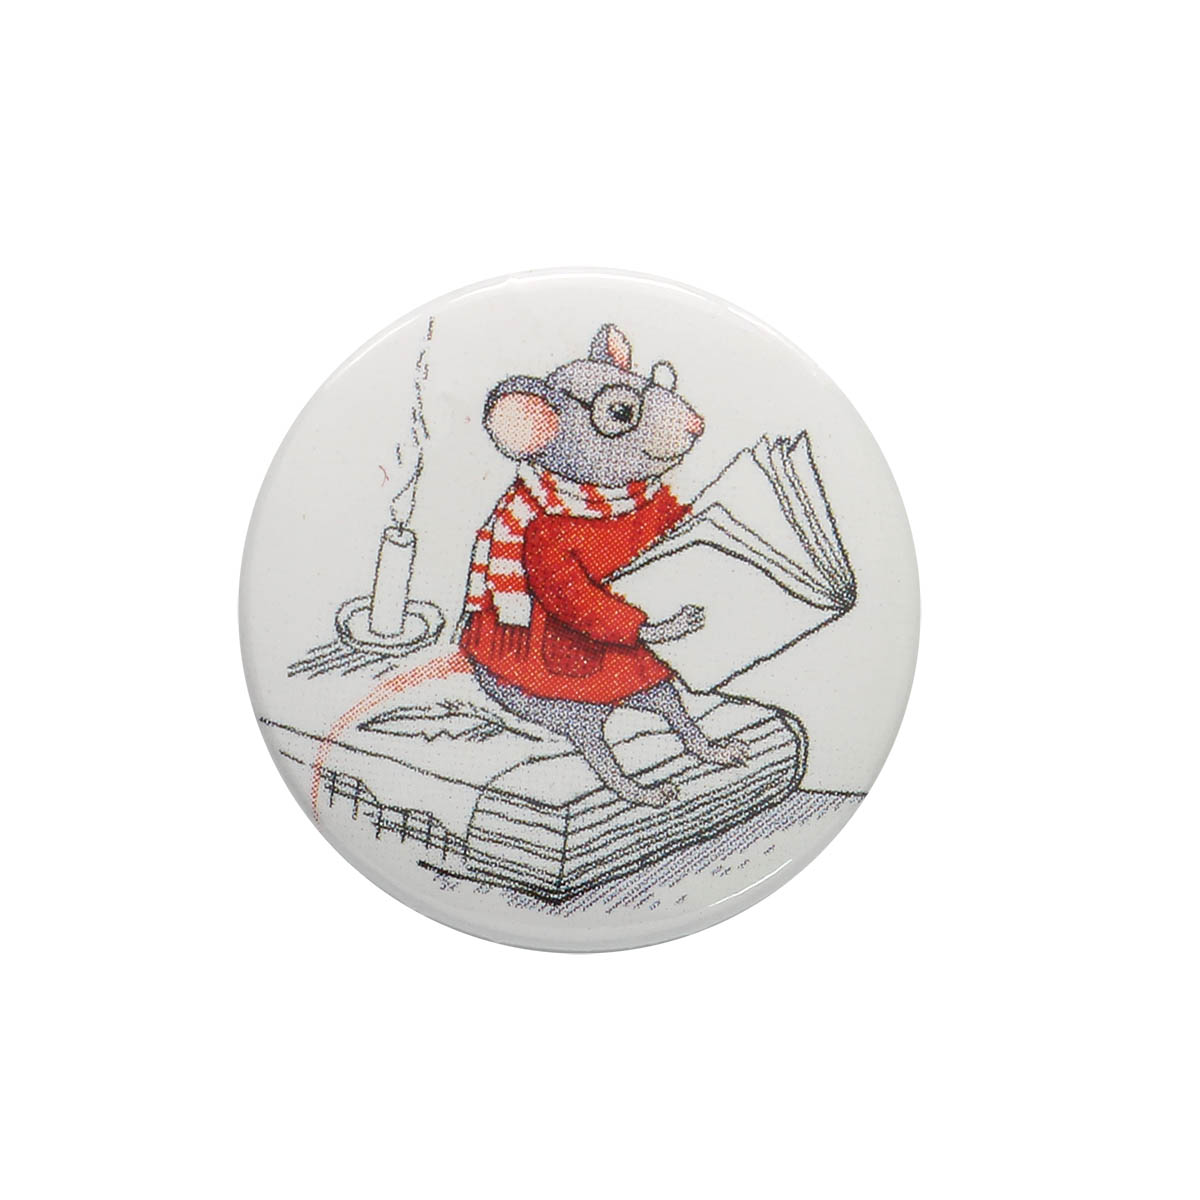 Мышка с книжкой - магнит для иголок Hobby&Pro